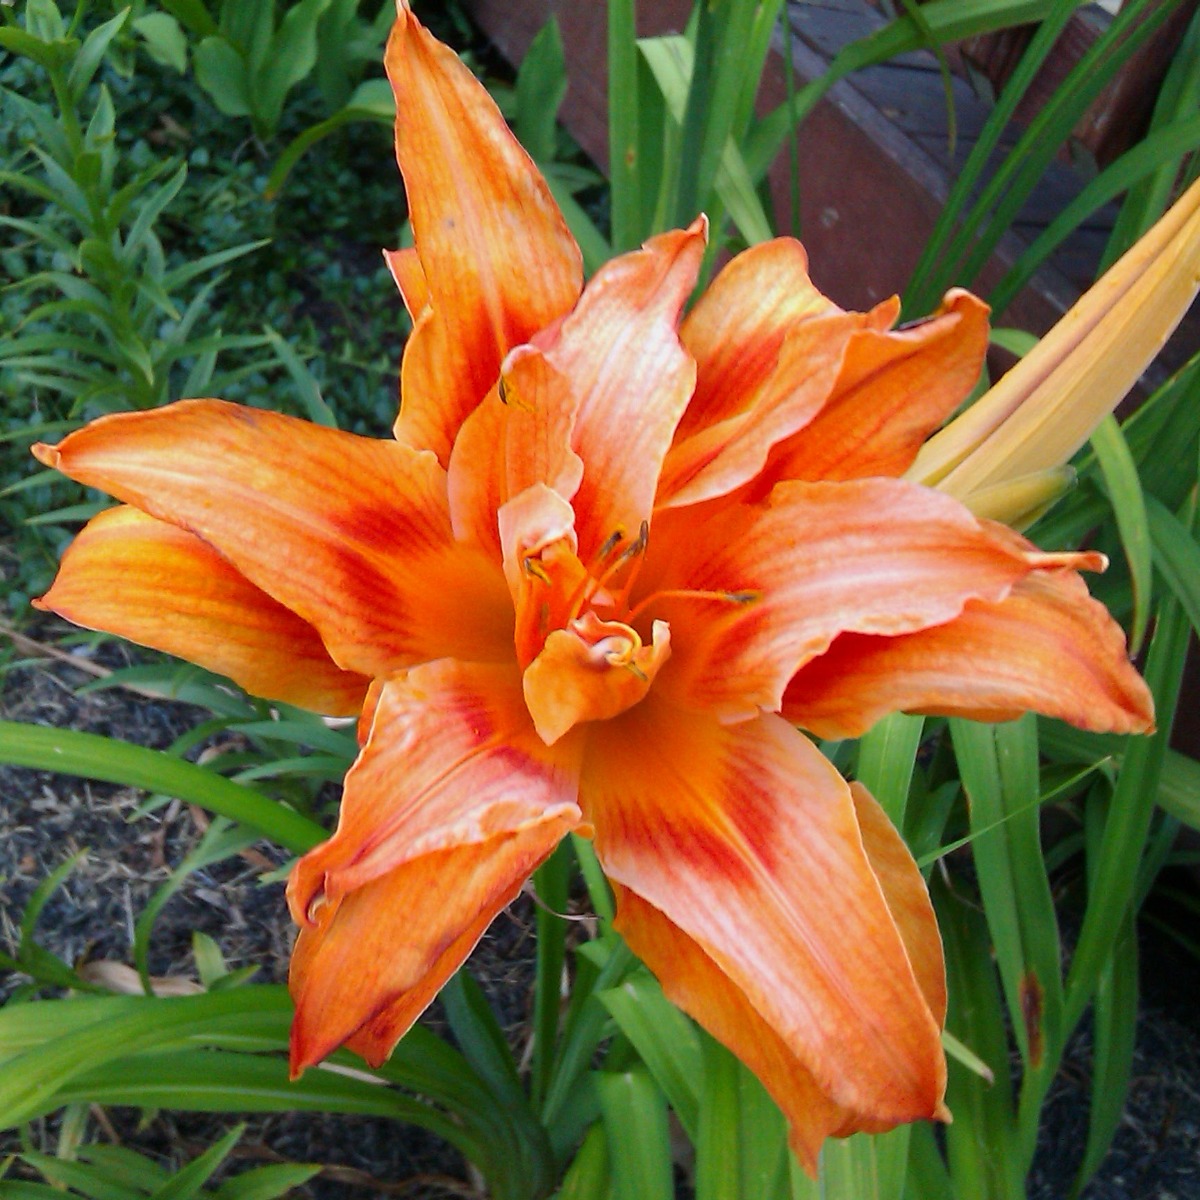 Big Orange Daylily Flower in our Garden